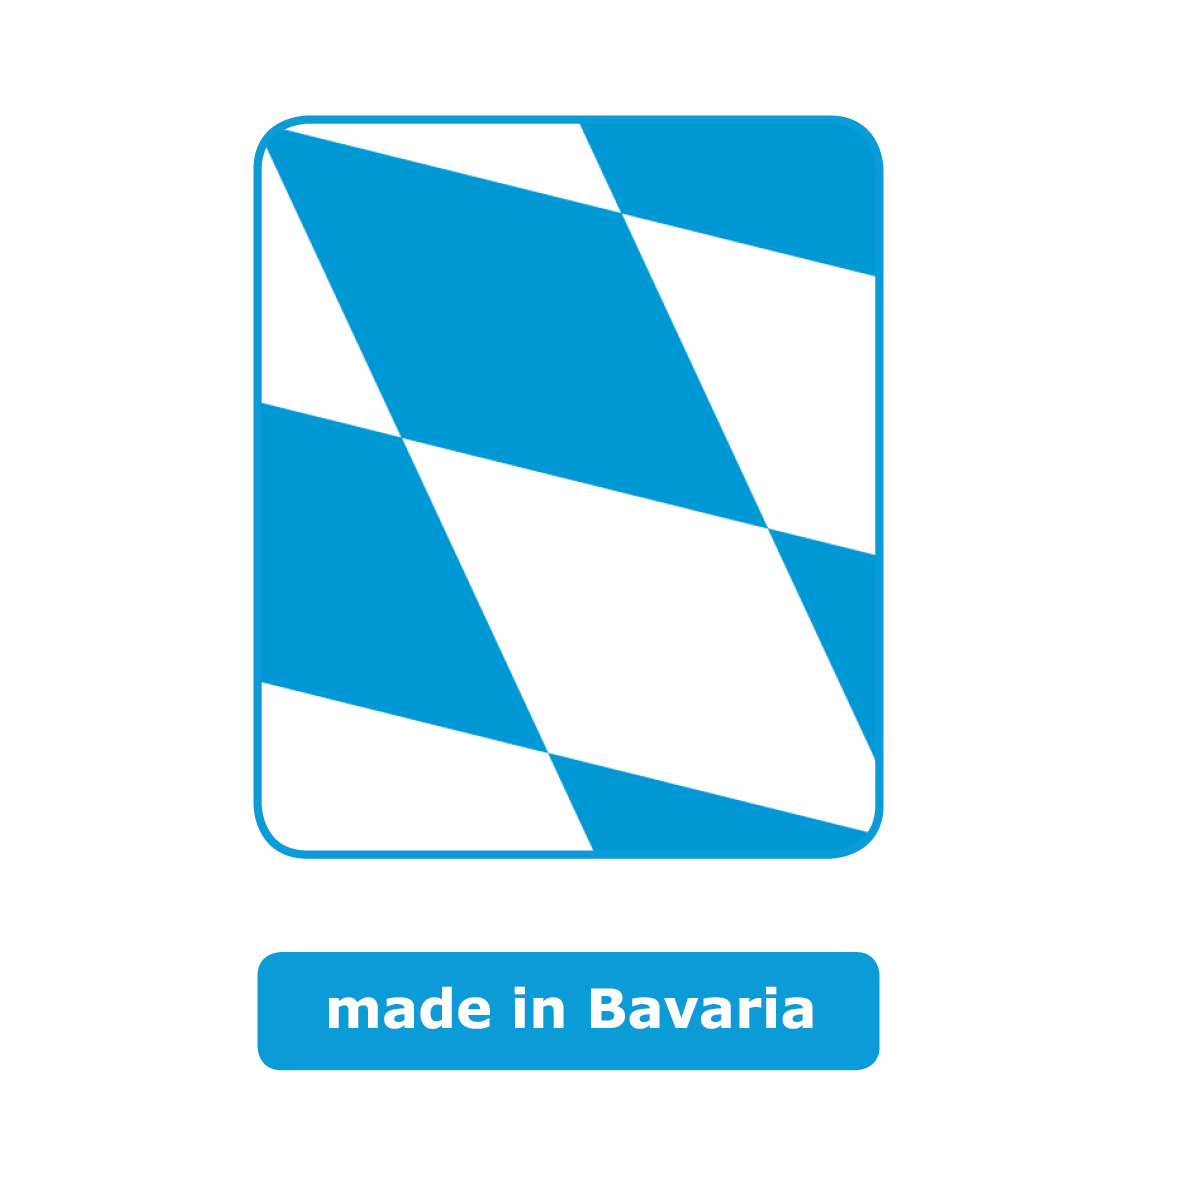 Viereckiges blau und weiß kariertes Symbol mit abgerundeten Ecken. Das Logo zeigt ein Ausschnitt von der bayerischen Flagge. Das Symbol steht für made in Bavaria